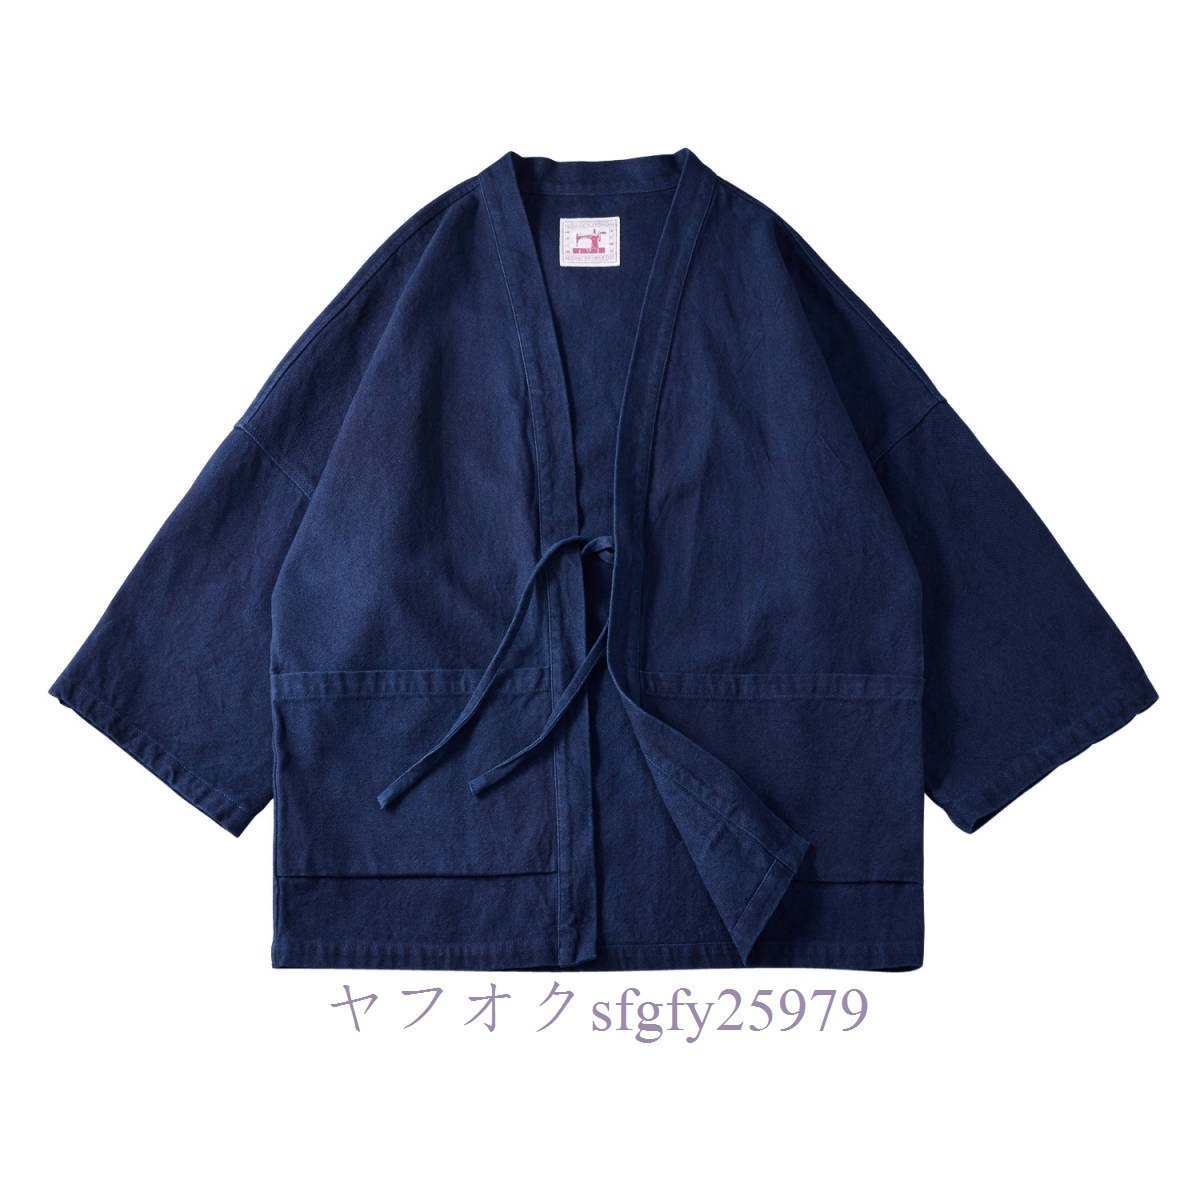 新品職人手作り 藍染 カバーオール 半纏 褞袍 綿&麻 ワークジャケット ゆったり 大きいサイズ 天然藍 インディゴ 薄手M~2XL_画像1